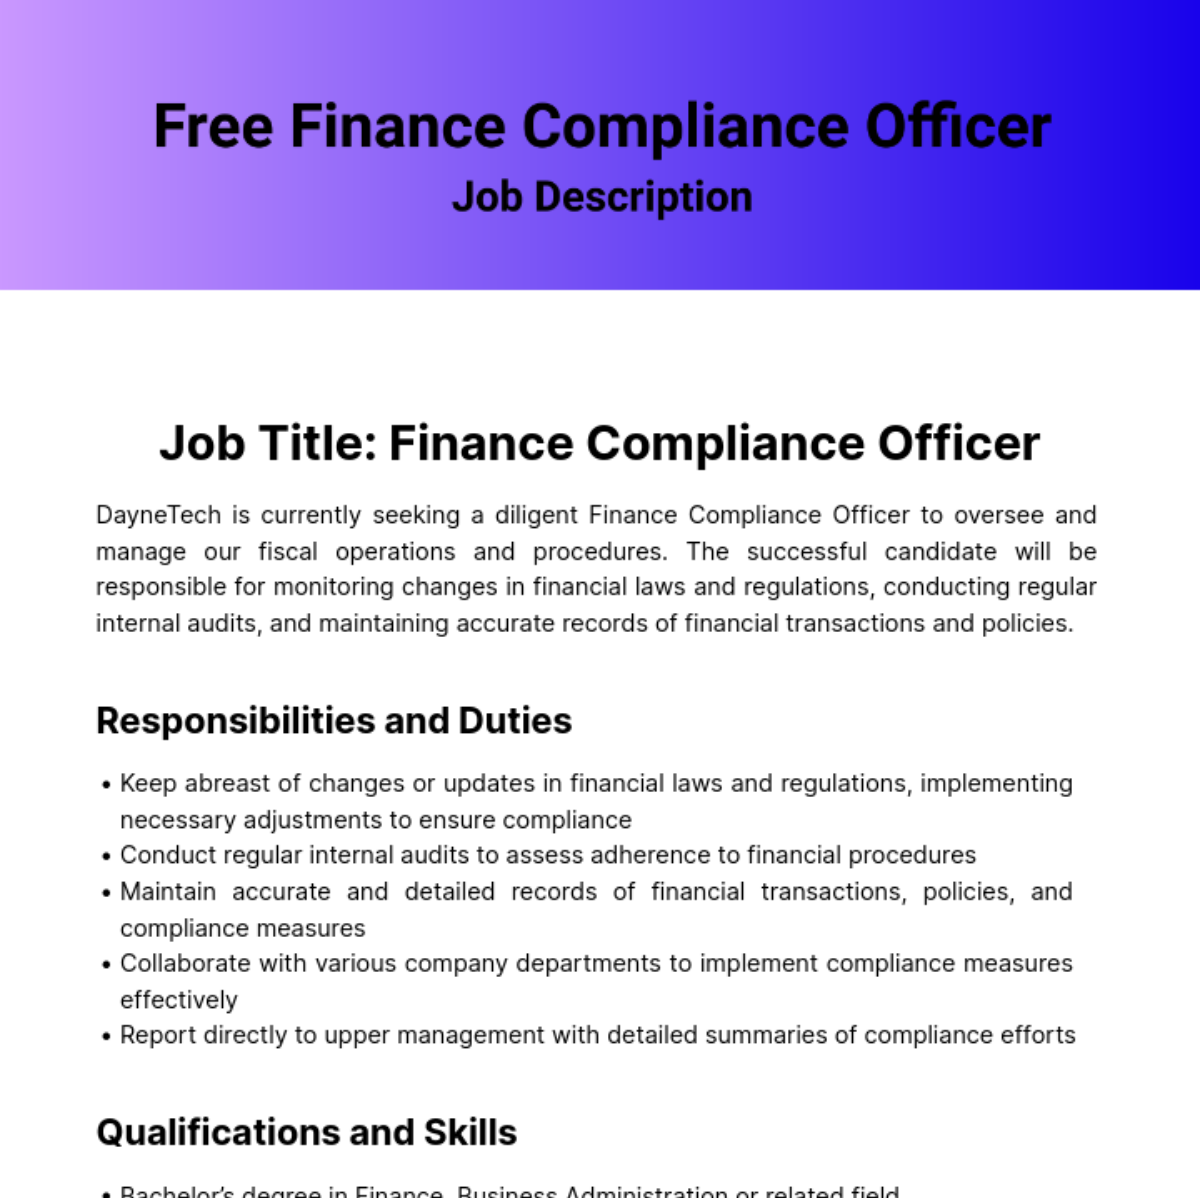 Finance Compliance Officer Job Description Template